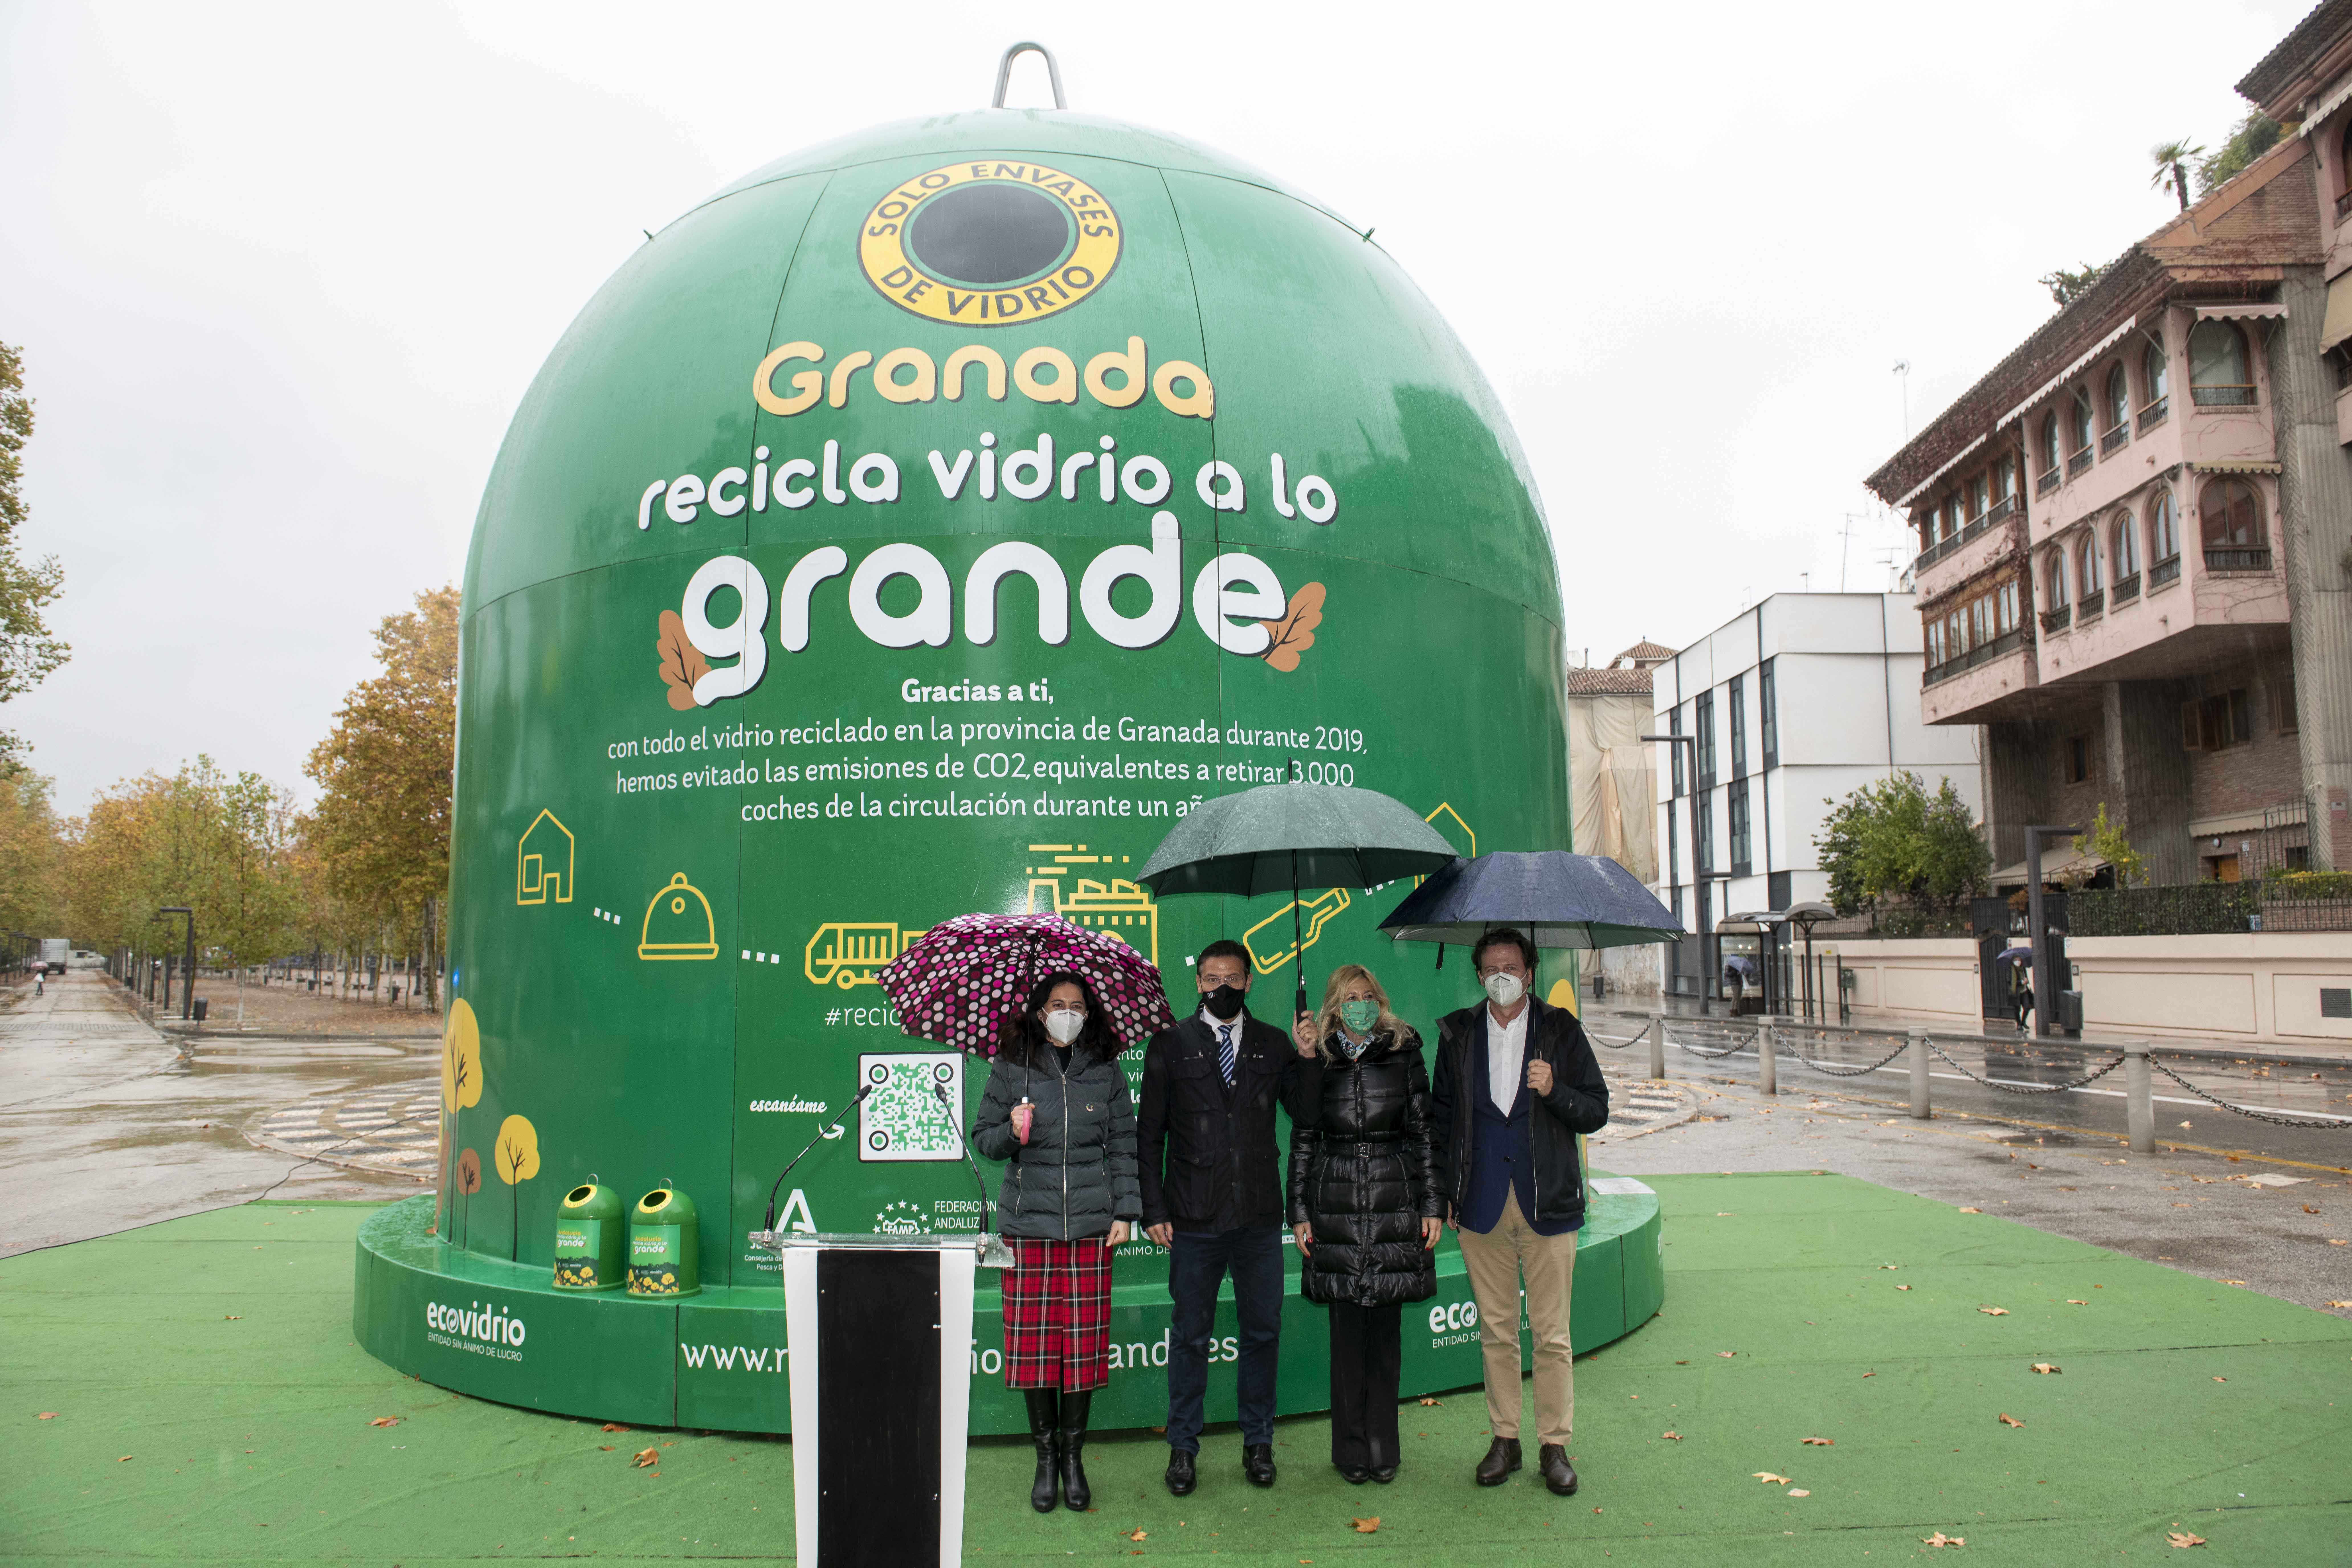 La campaña ‘Andalucía recicla vidrio a lo grande’  busca concienciar sobre la importancia de reciclar los envases de vidrio